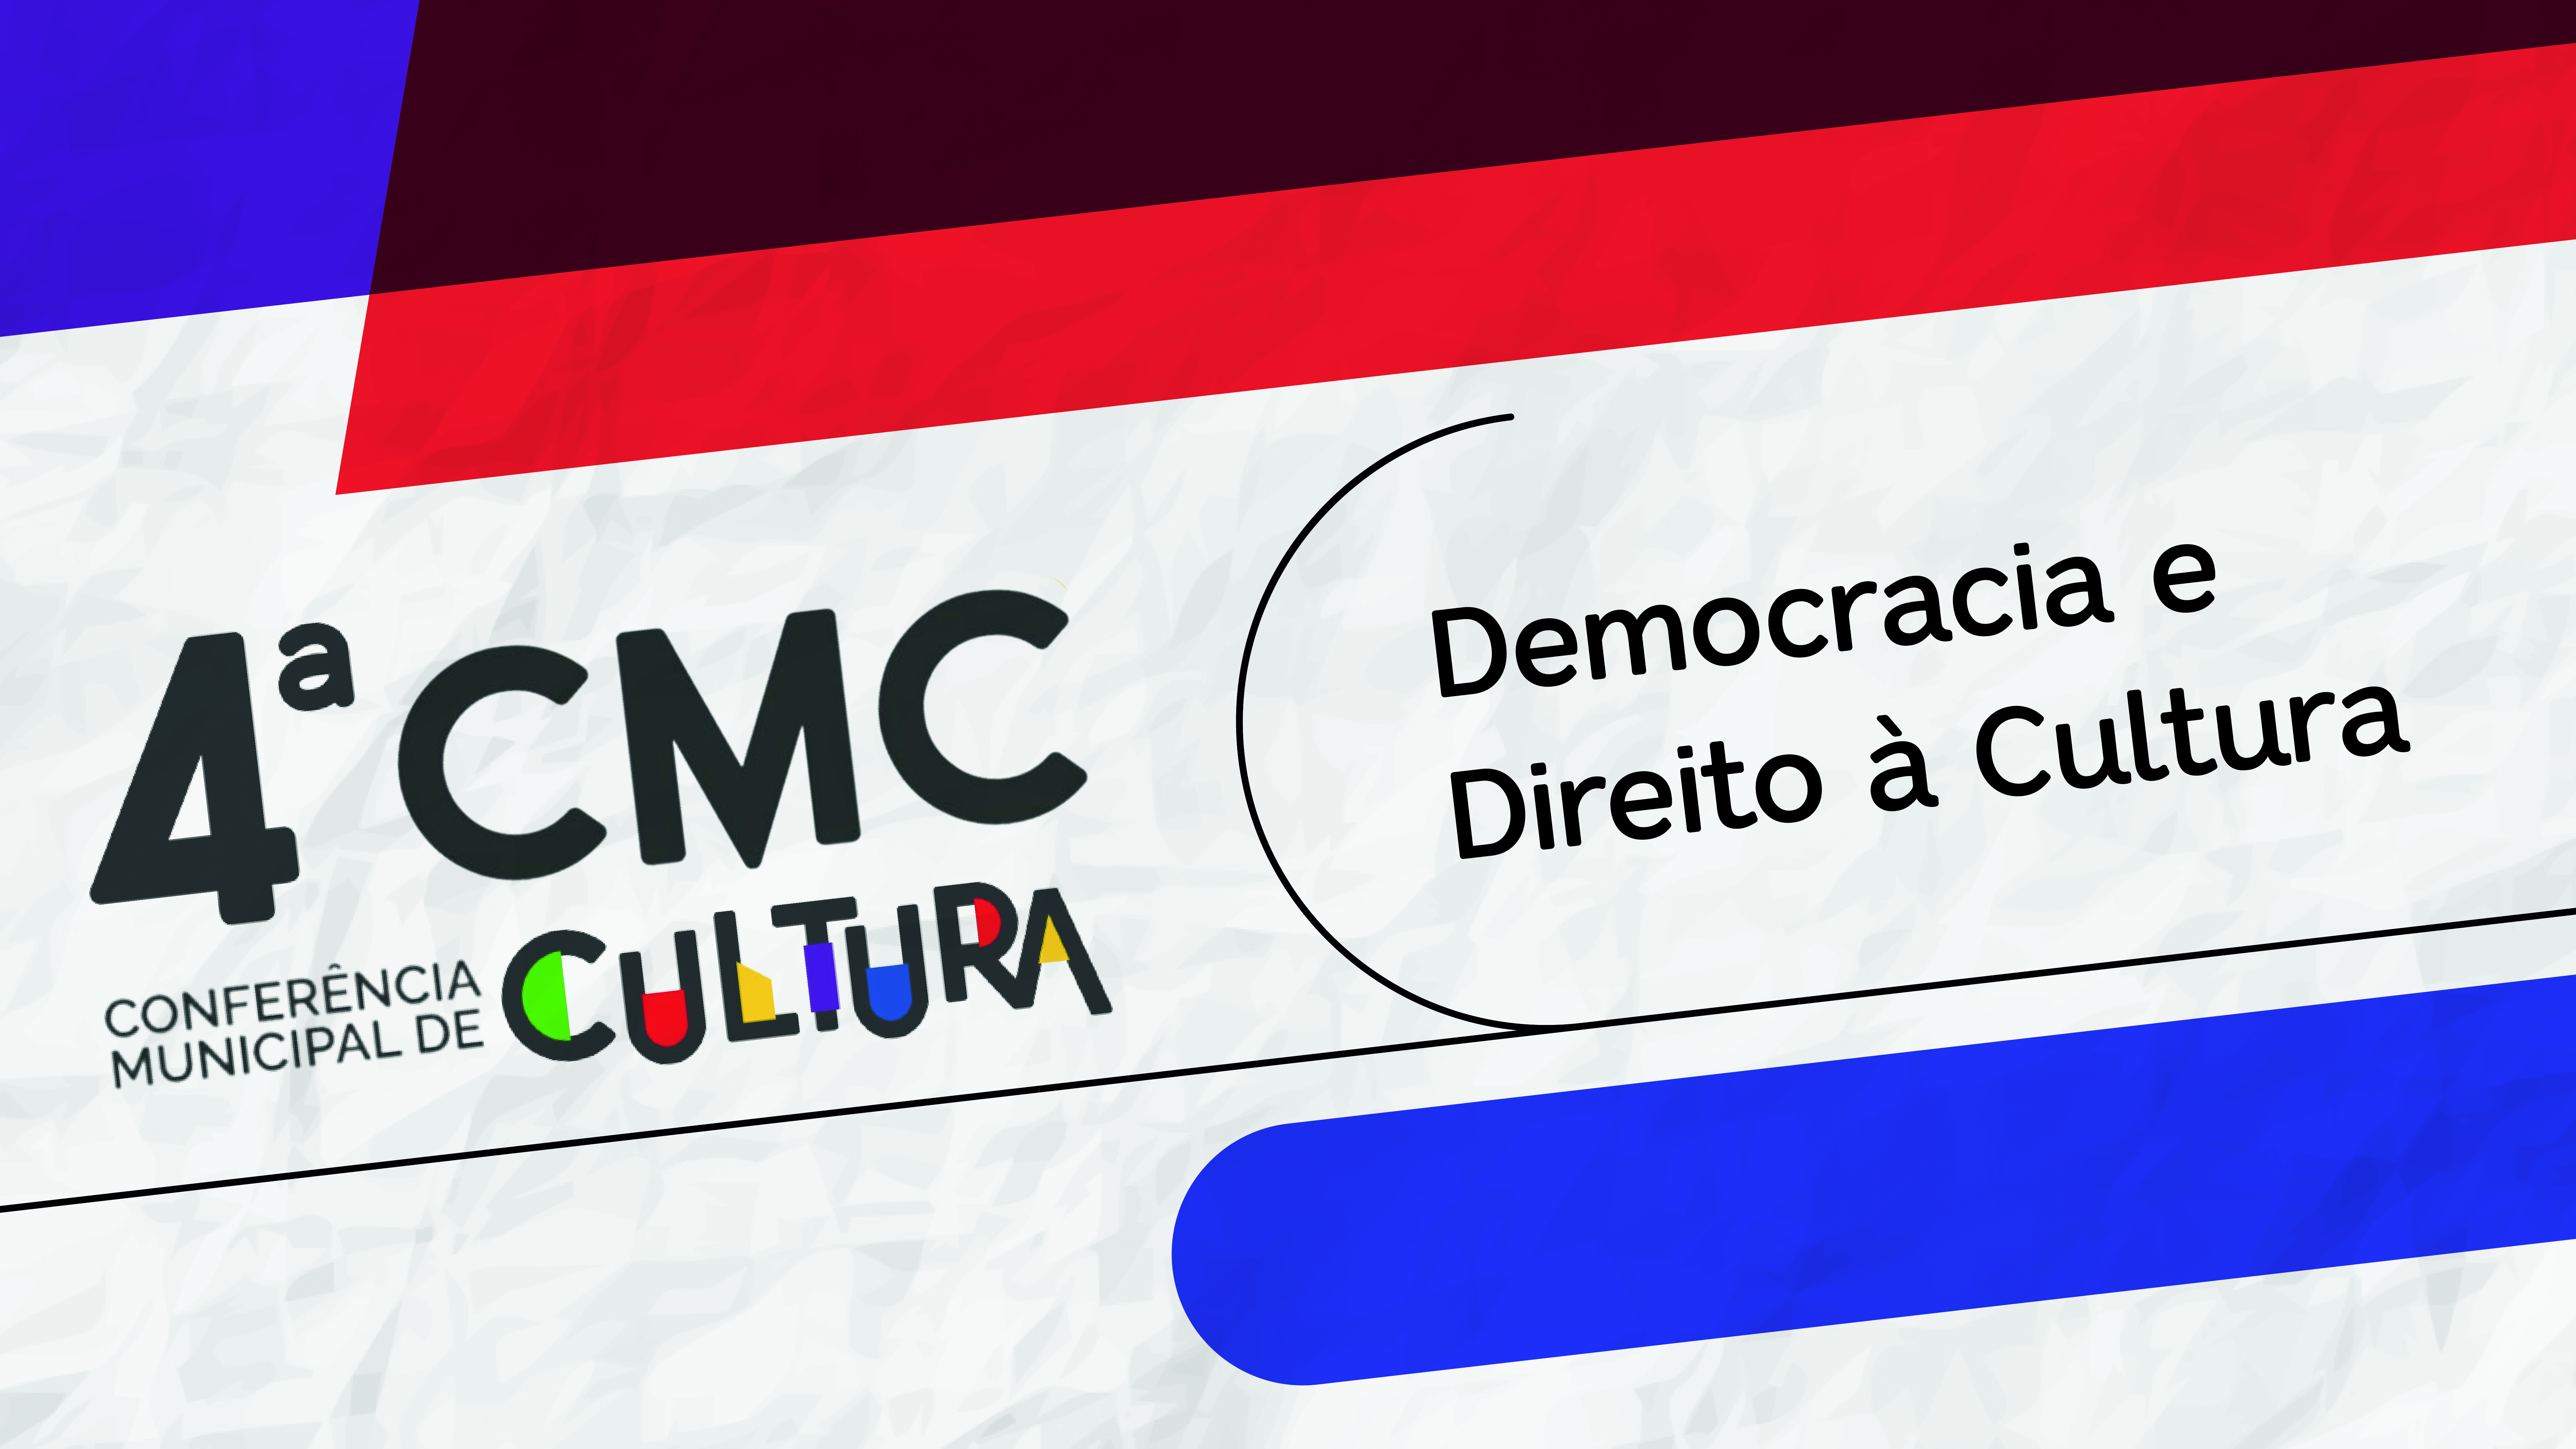 '4ª Conferência Municipal de Cultura' convida população a participar e debater